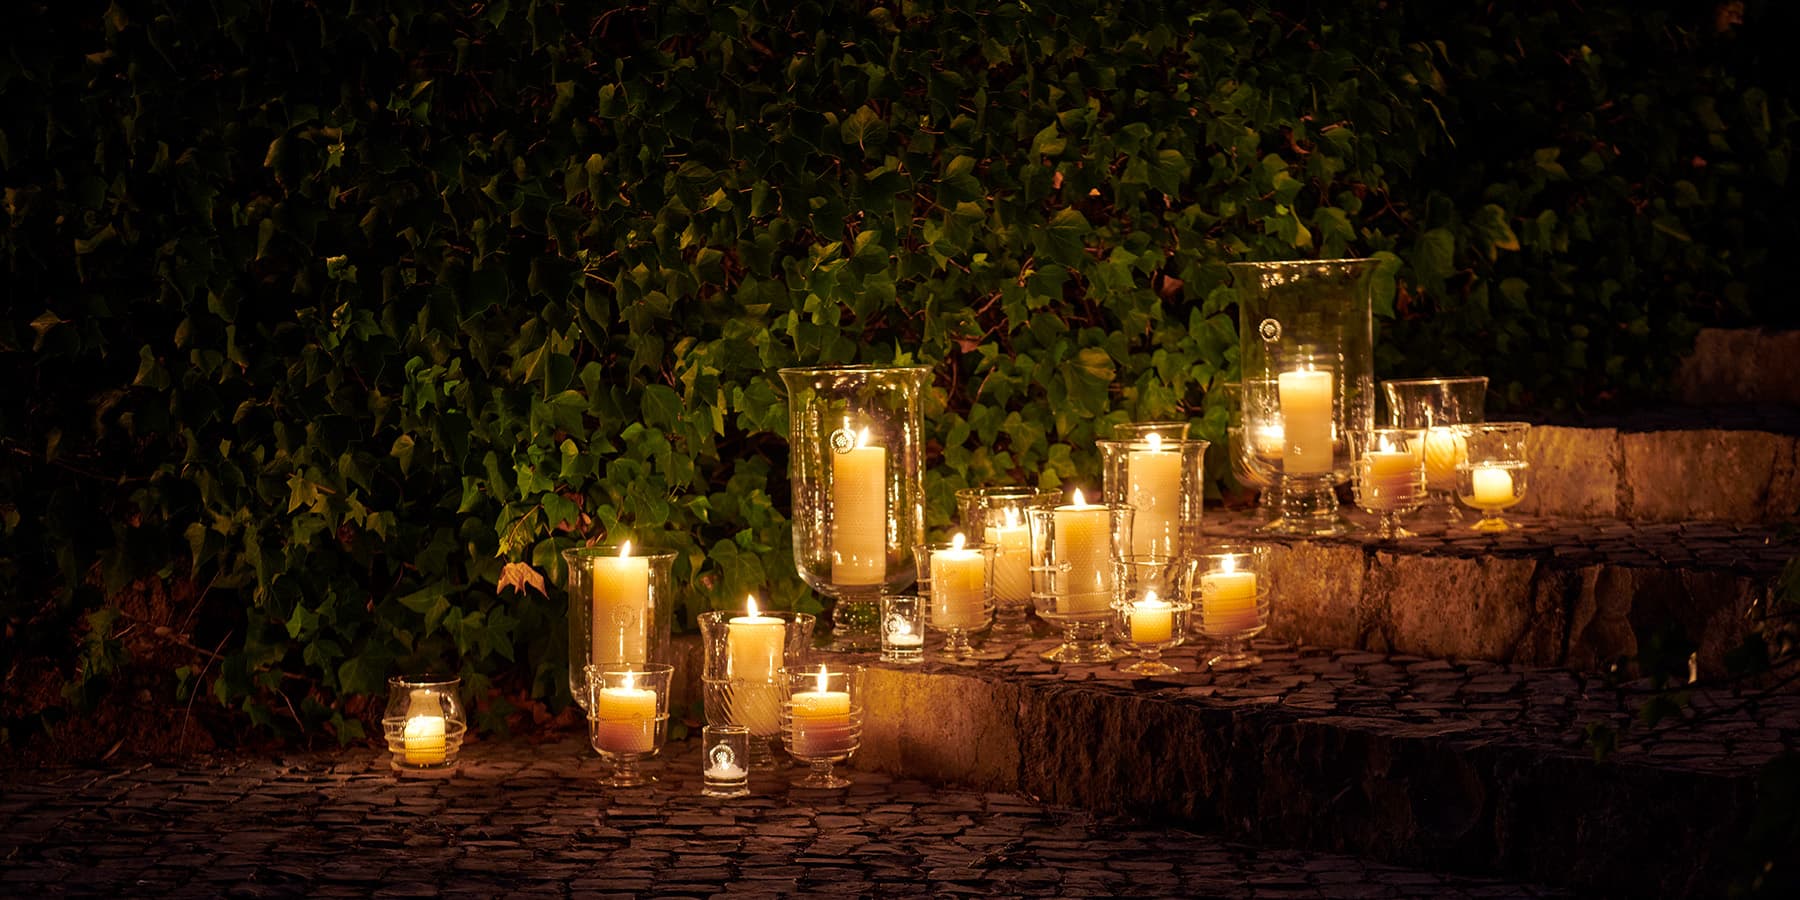 Enjoy a candlelit evening